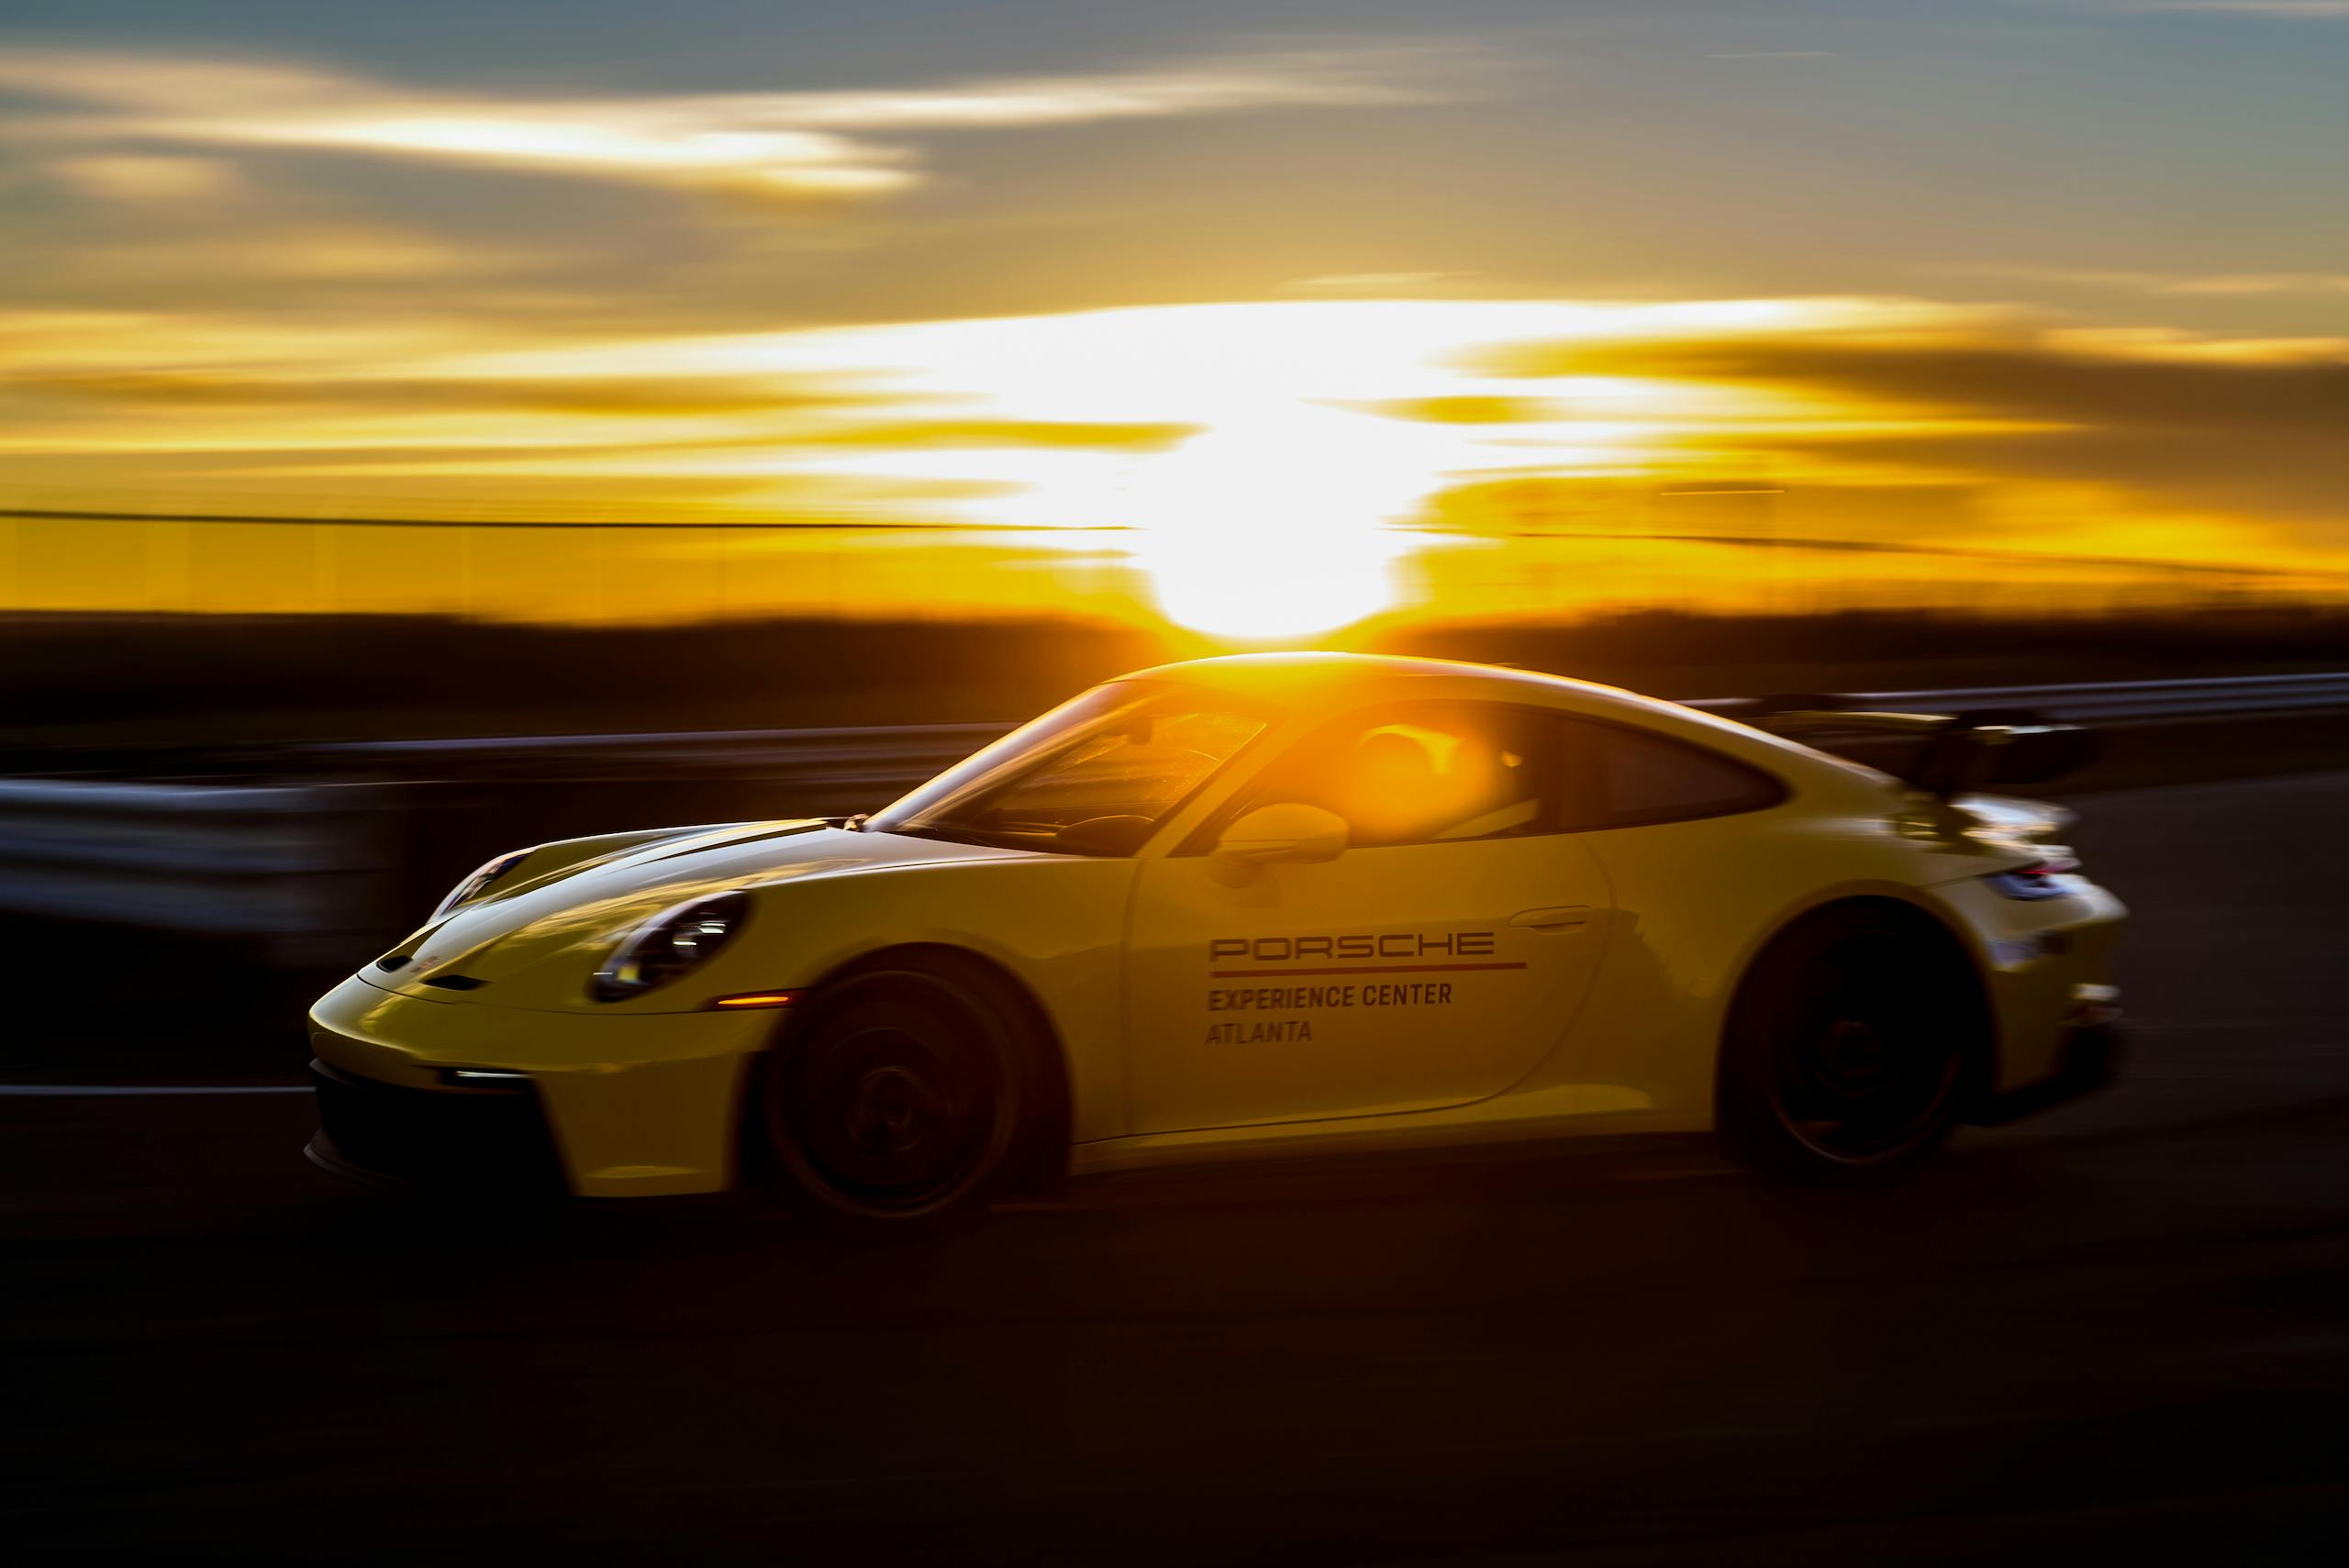 Porsche experience center track sunset